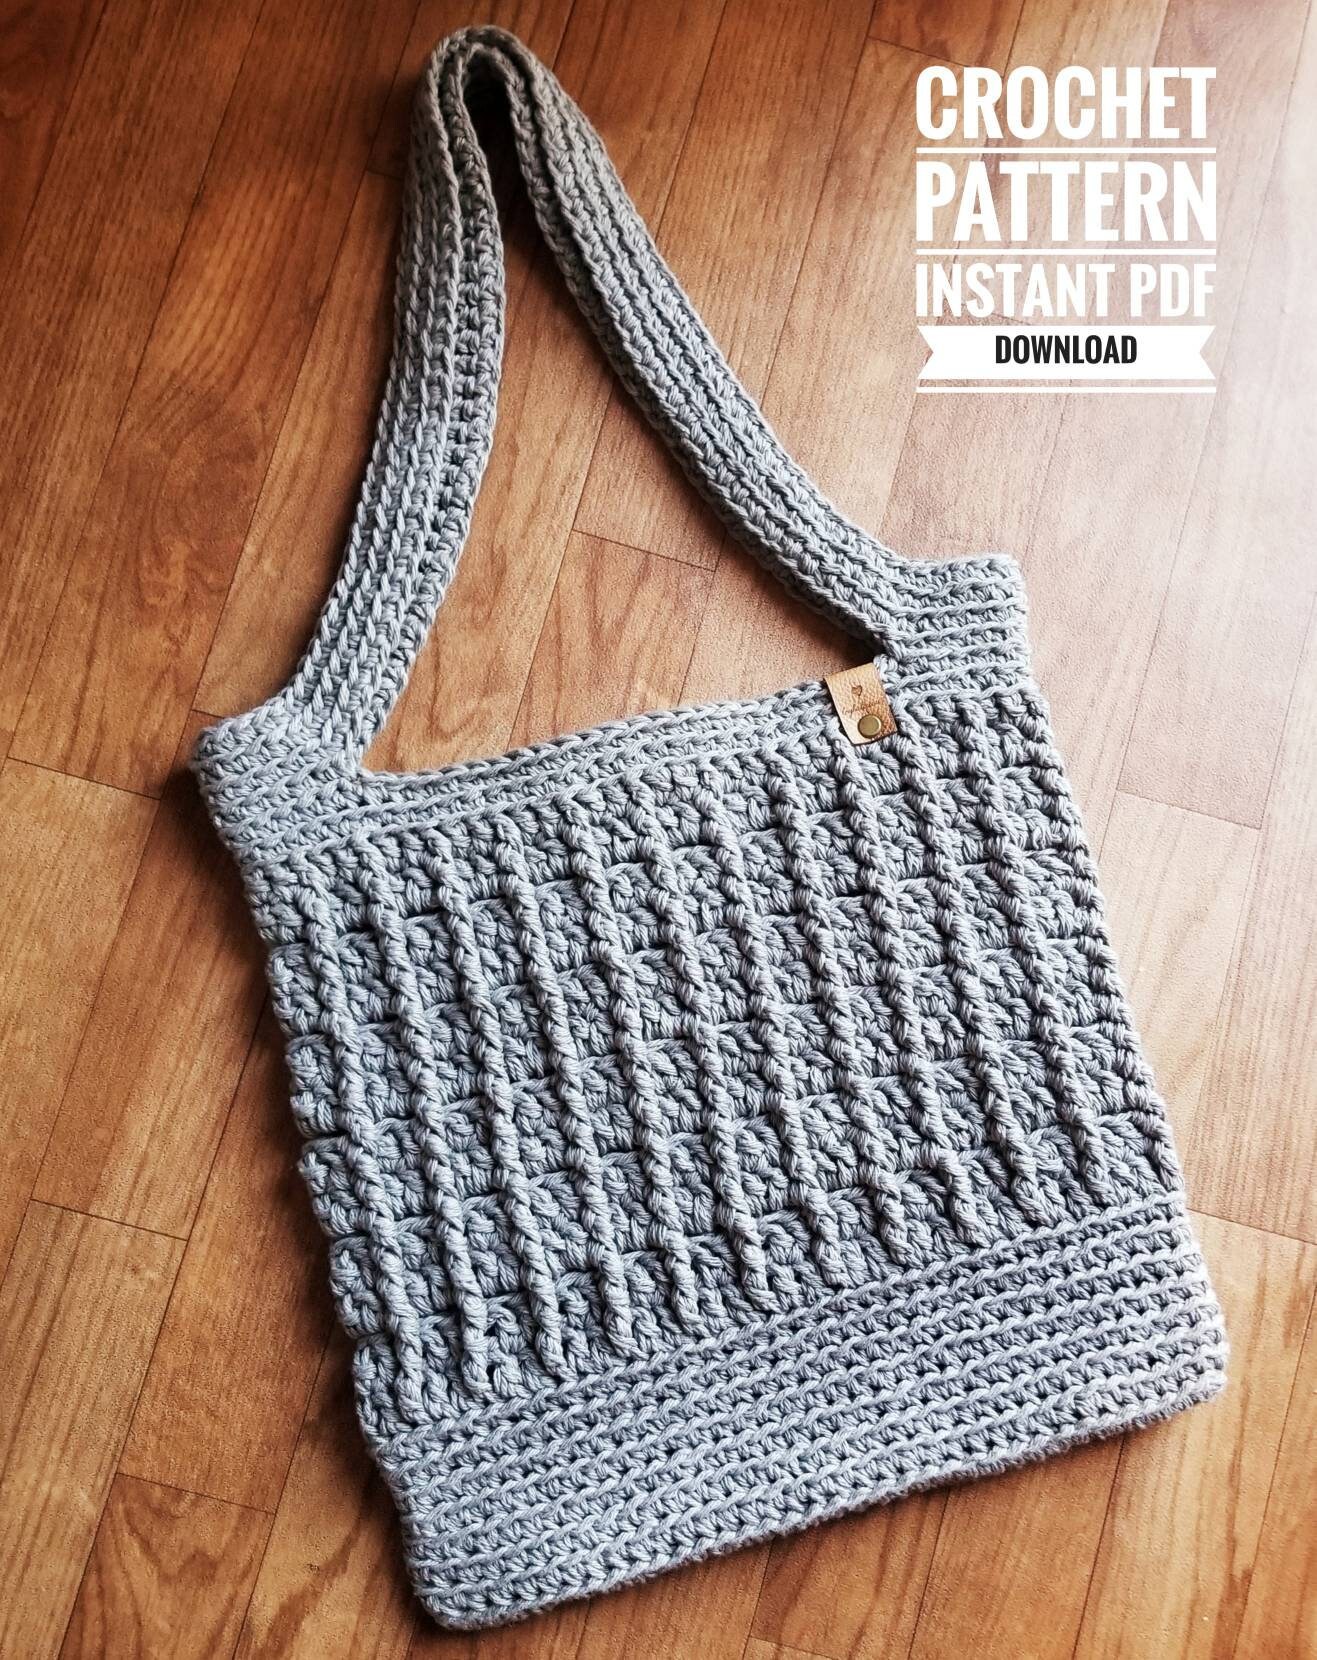 Crochet Market Bag Pattern, Market Bag PDF Download - Etsy